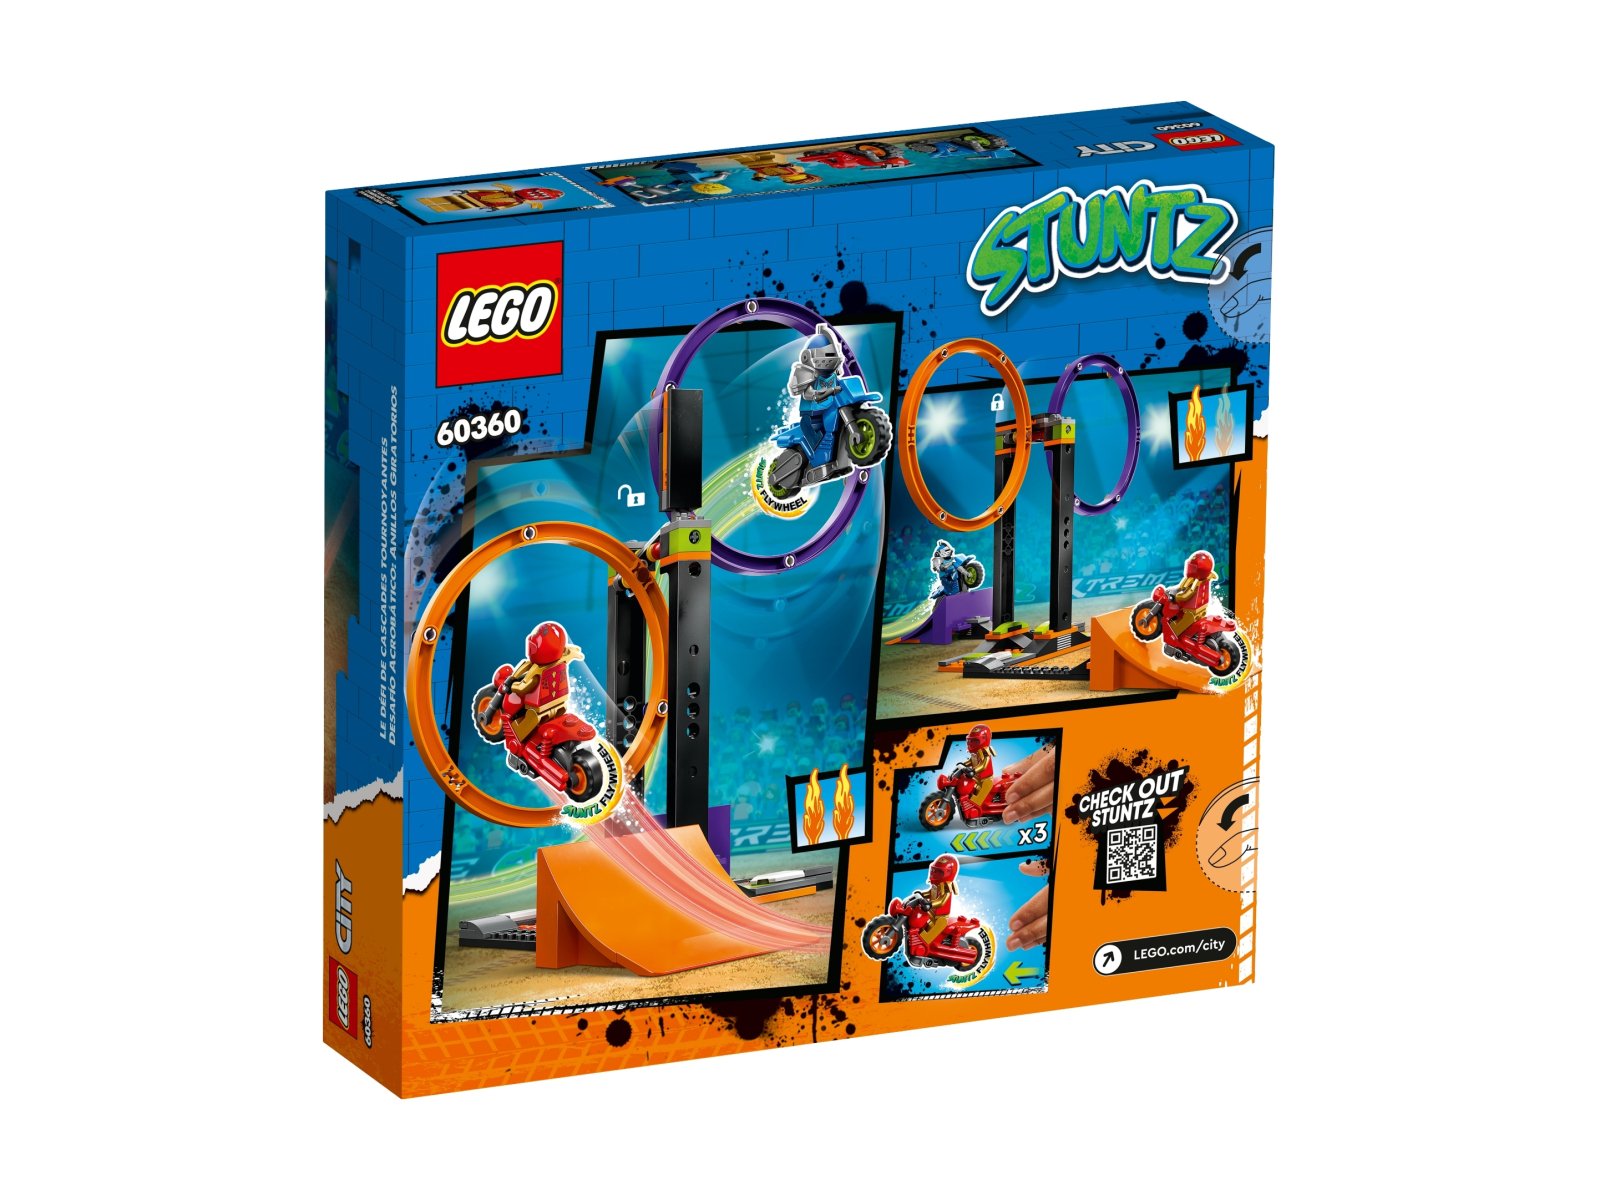 LEGO City 60360 Wyzwanie kaskaderskie – obracające się okręgi